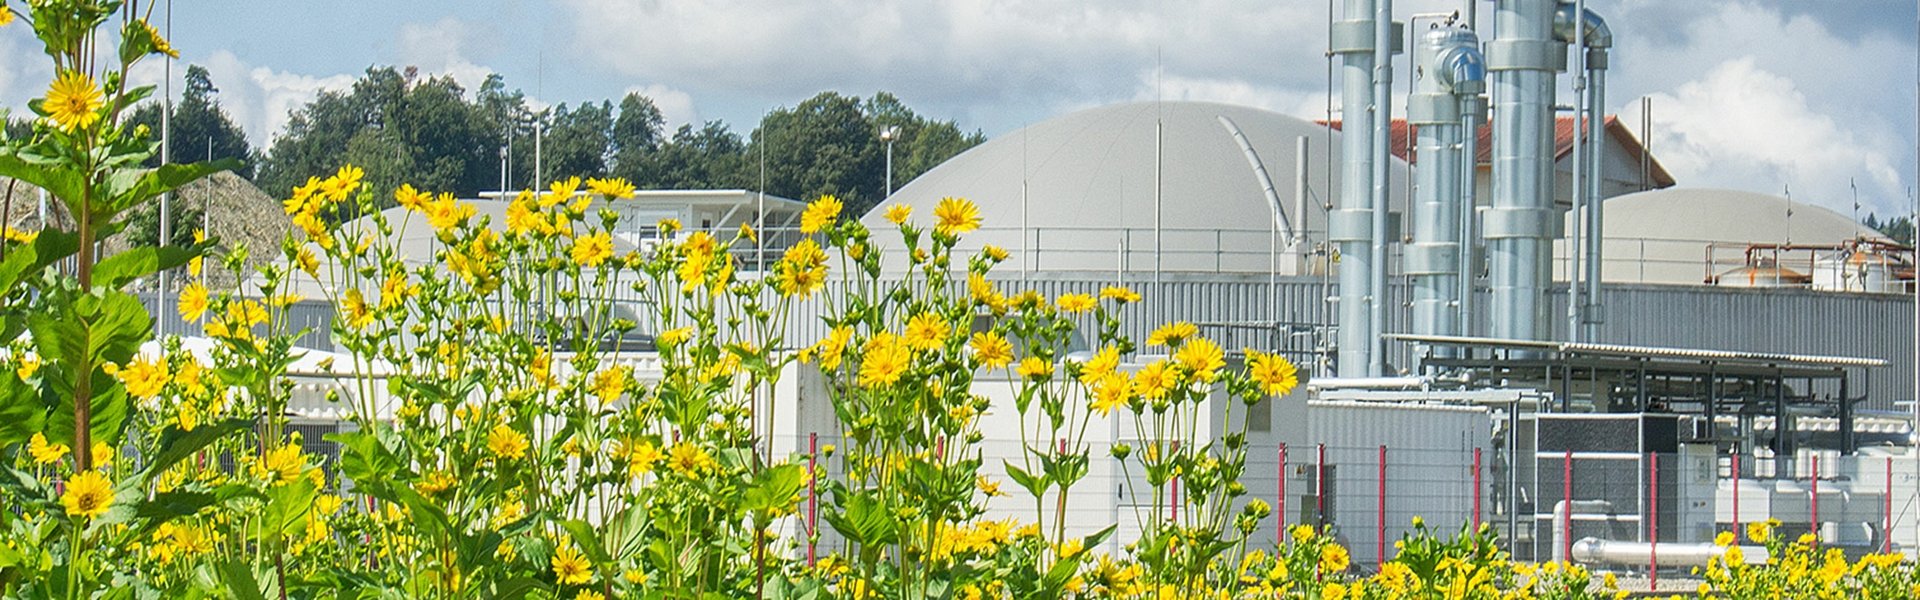 Energiepark Biomethangas Hahnennest GmbH: Anlage mit gelben Blumen im Vordergrund